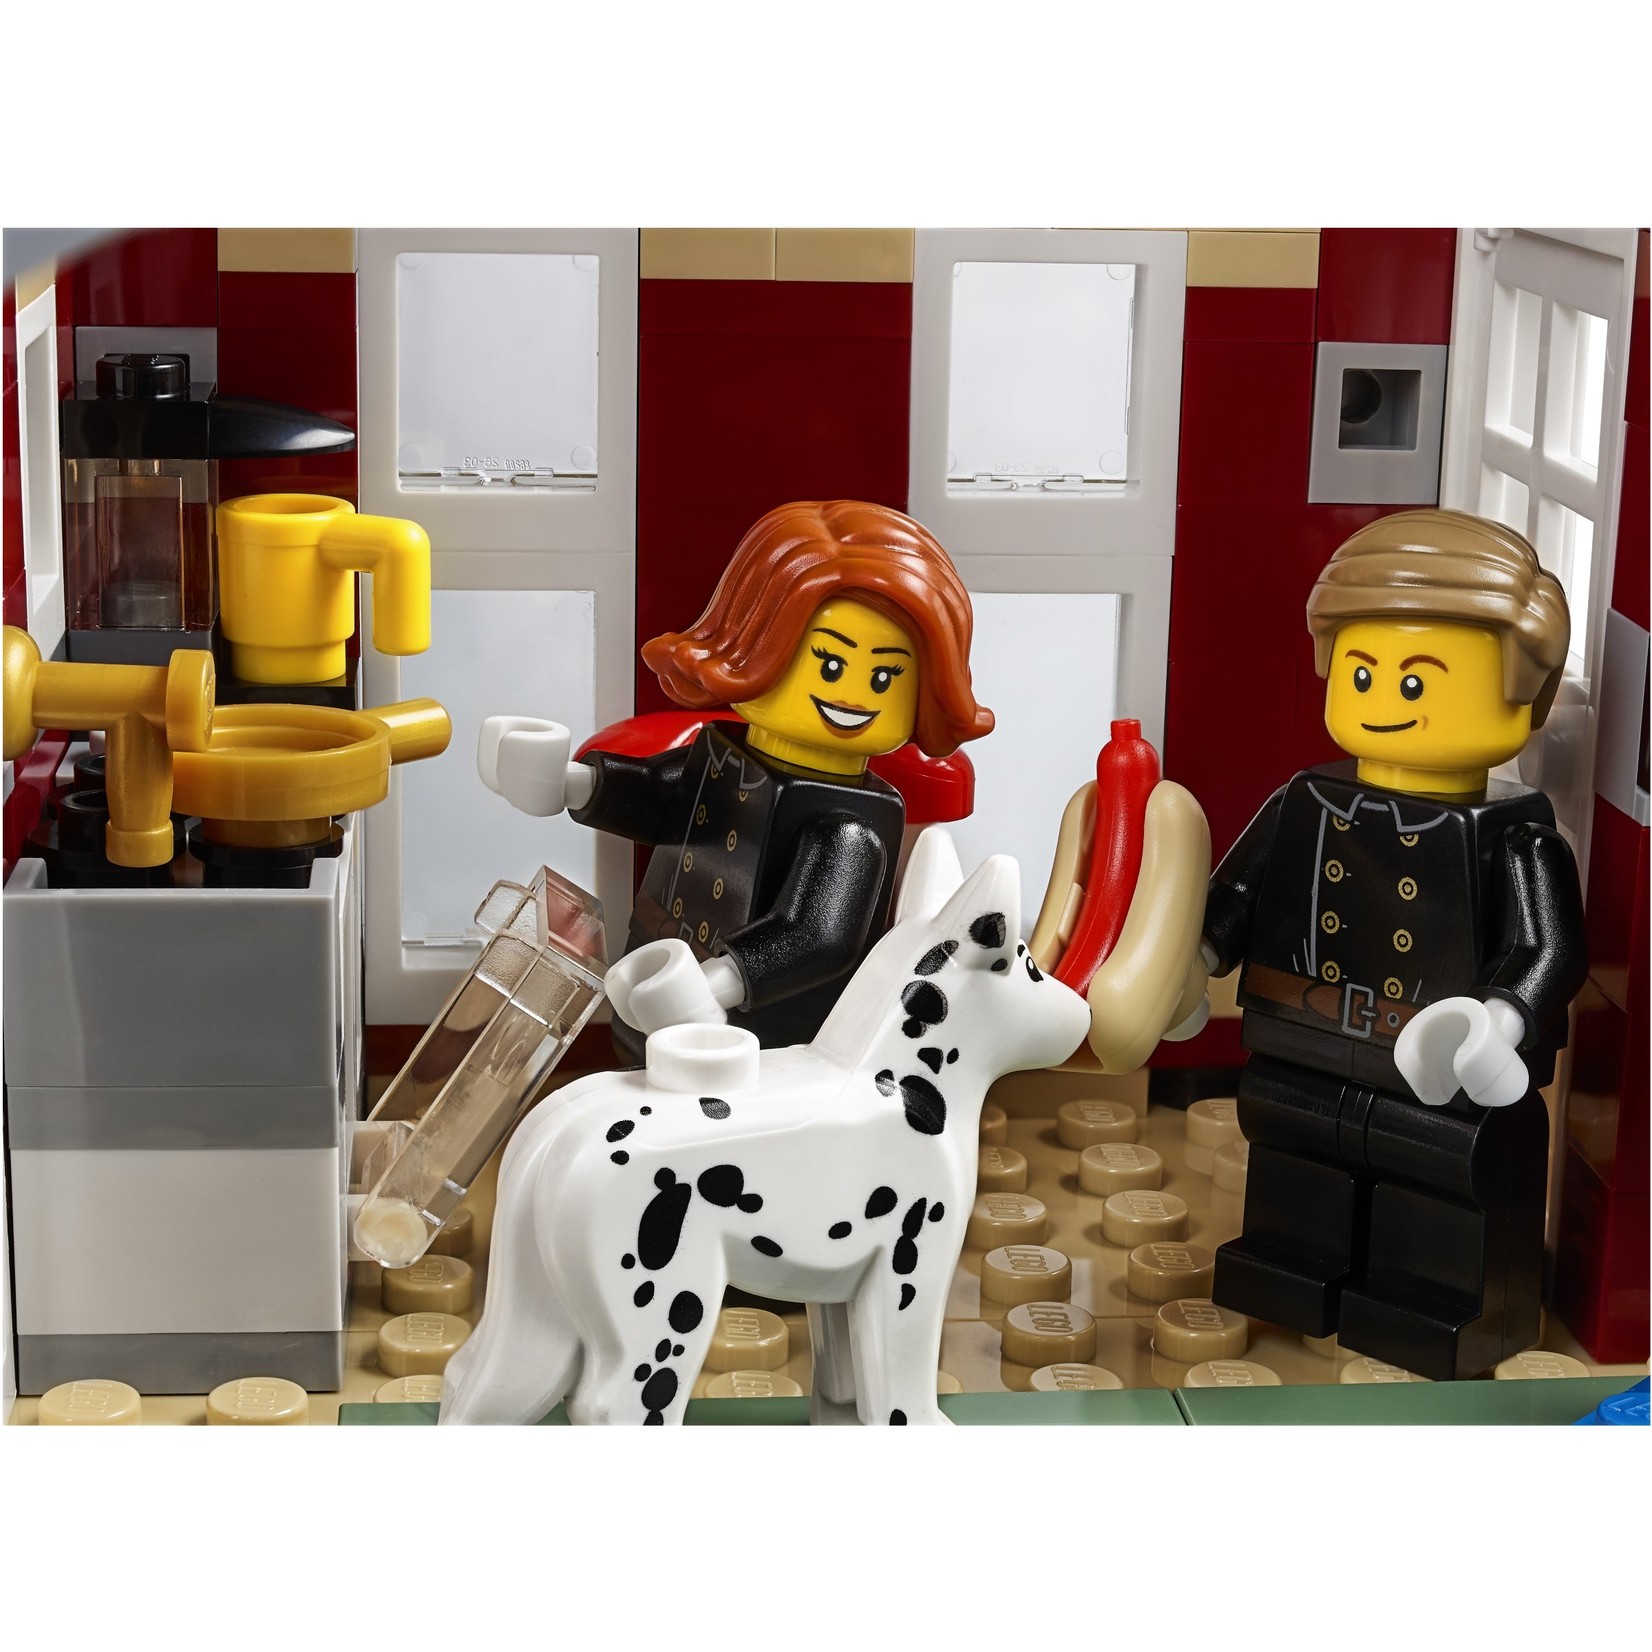 LEGO Brandweerkazerne in winterdorp - 10263